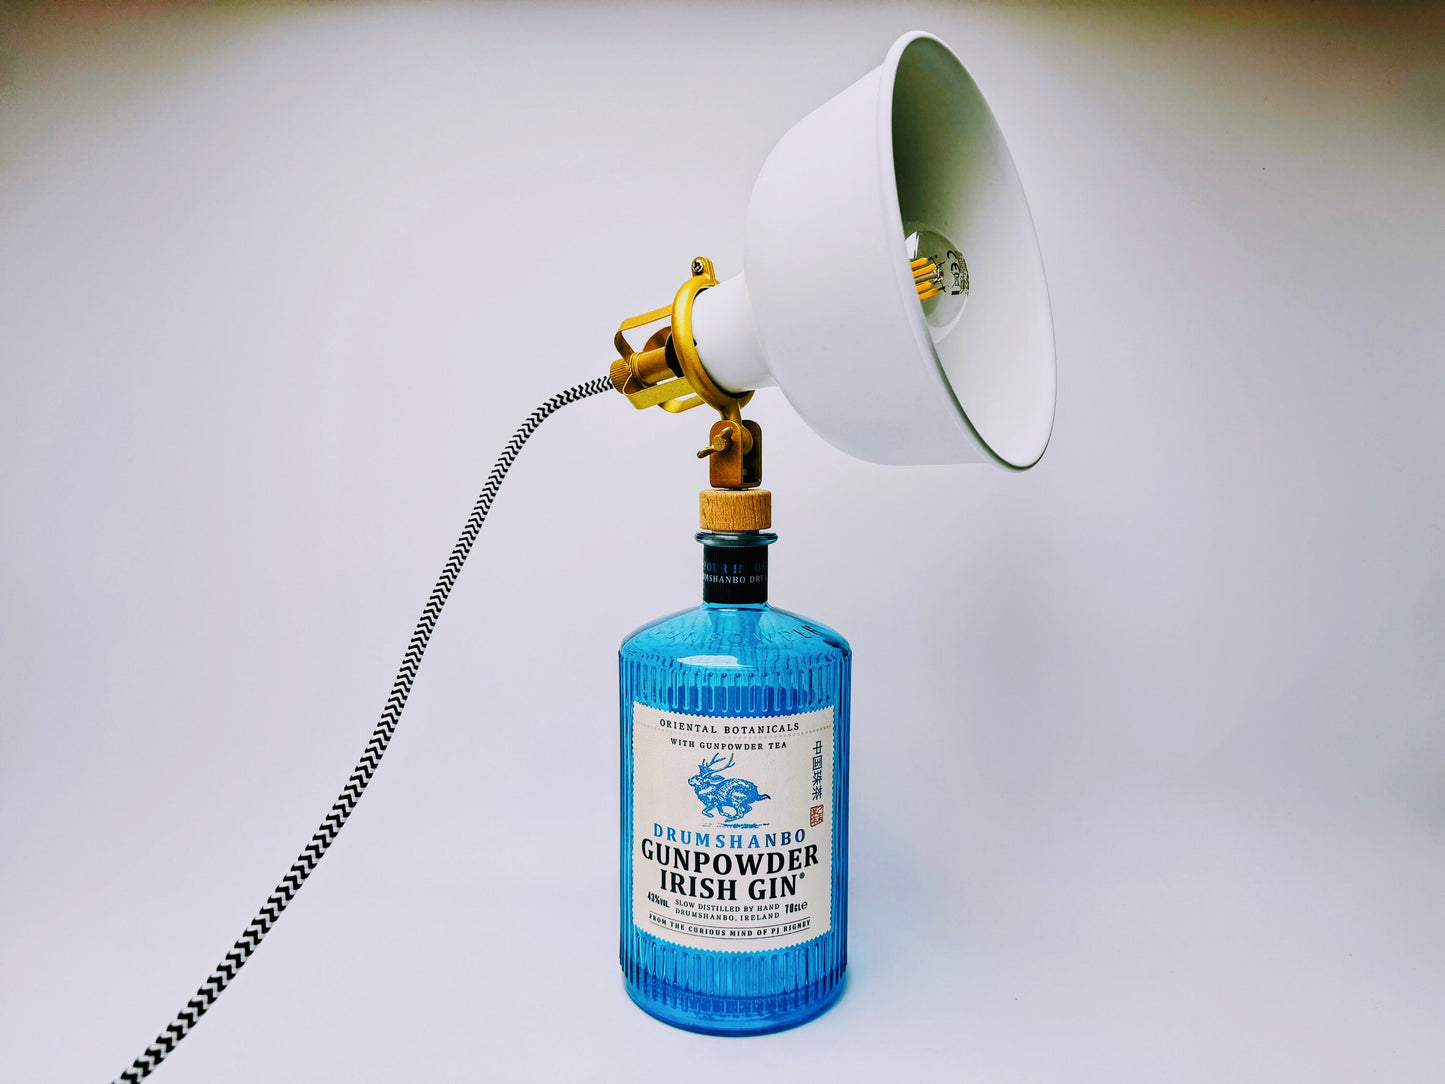 Gunpowder Gin Vintage-Lampe | Handgemachte nachhaltige Tischlampe aus Gunpowder Gin | Einzigartige Geschenkidee | Deko-Licht | Upcycling